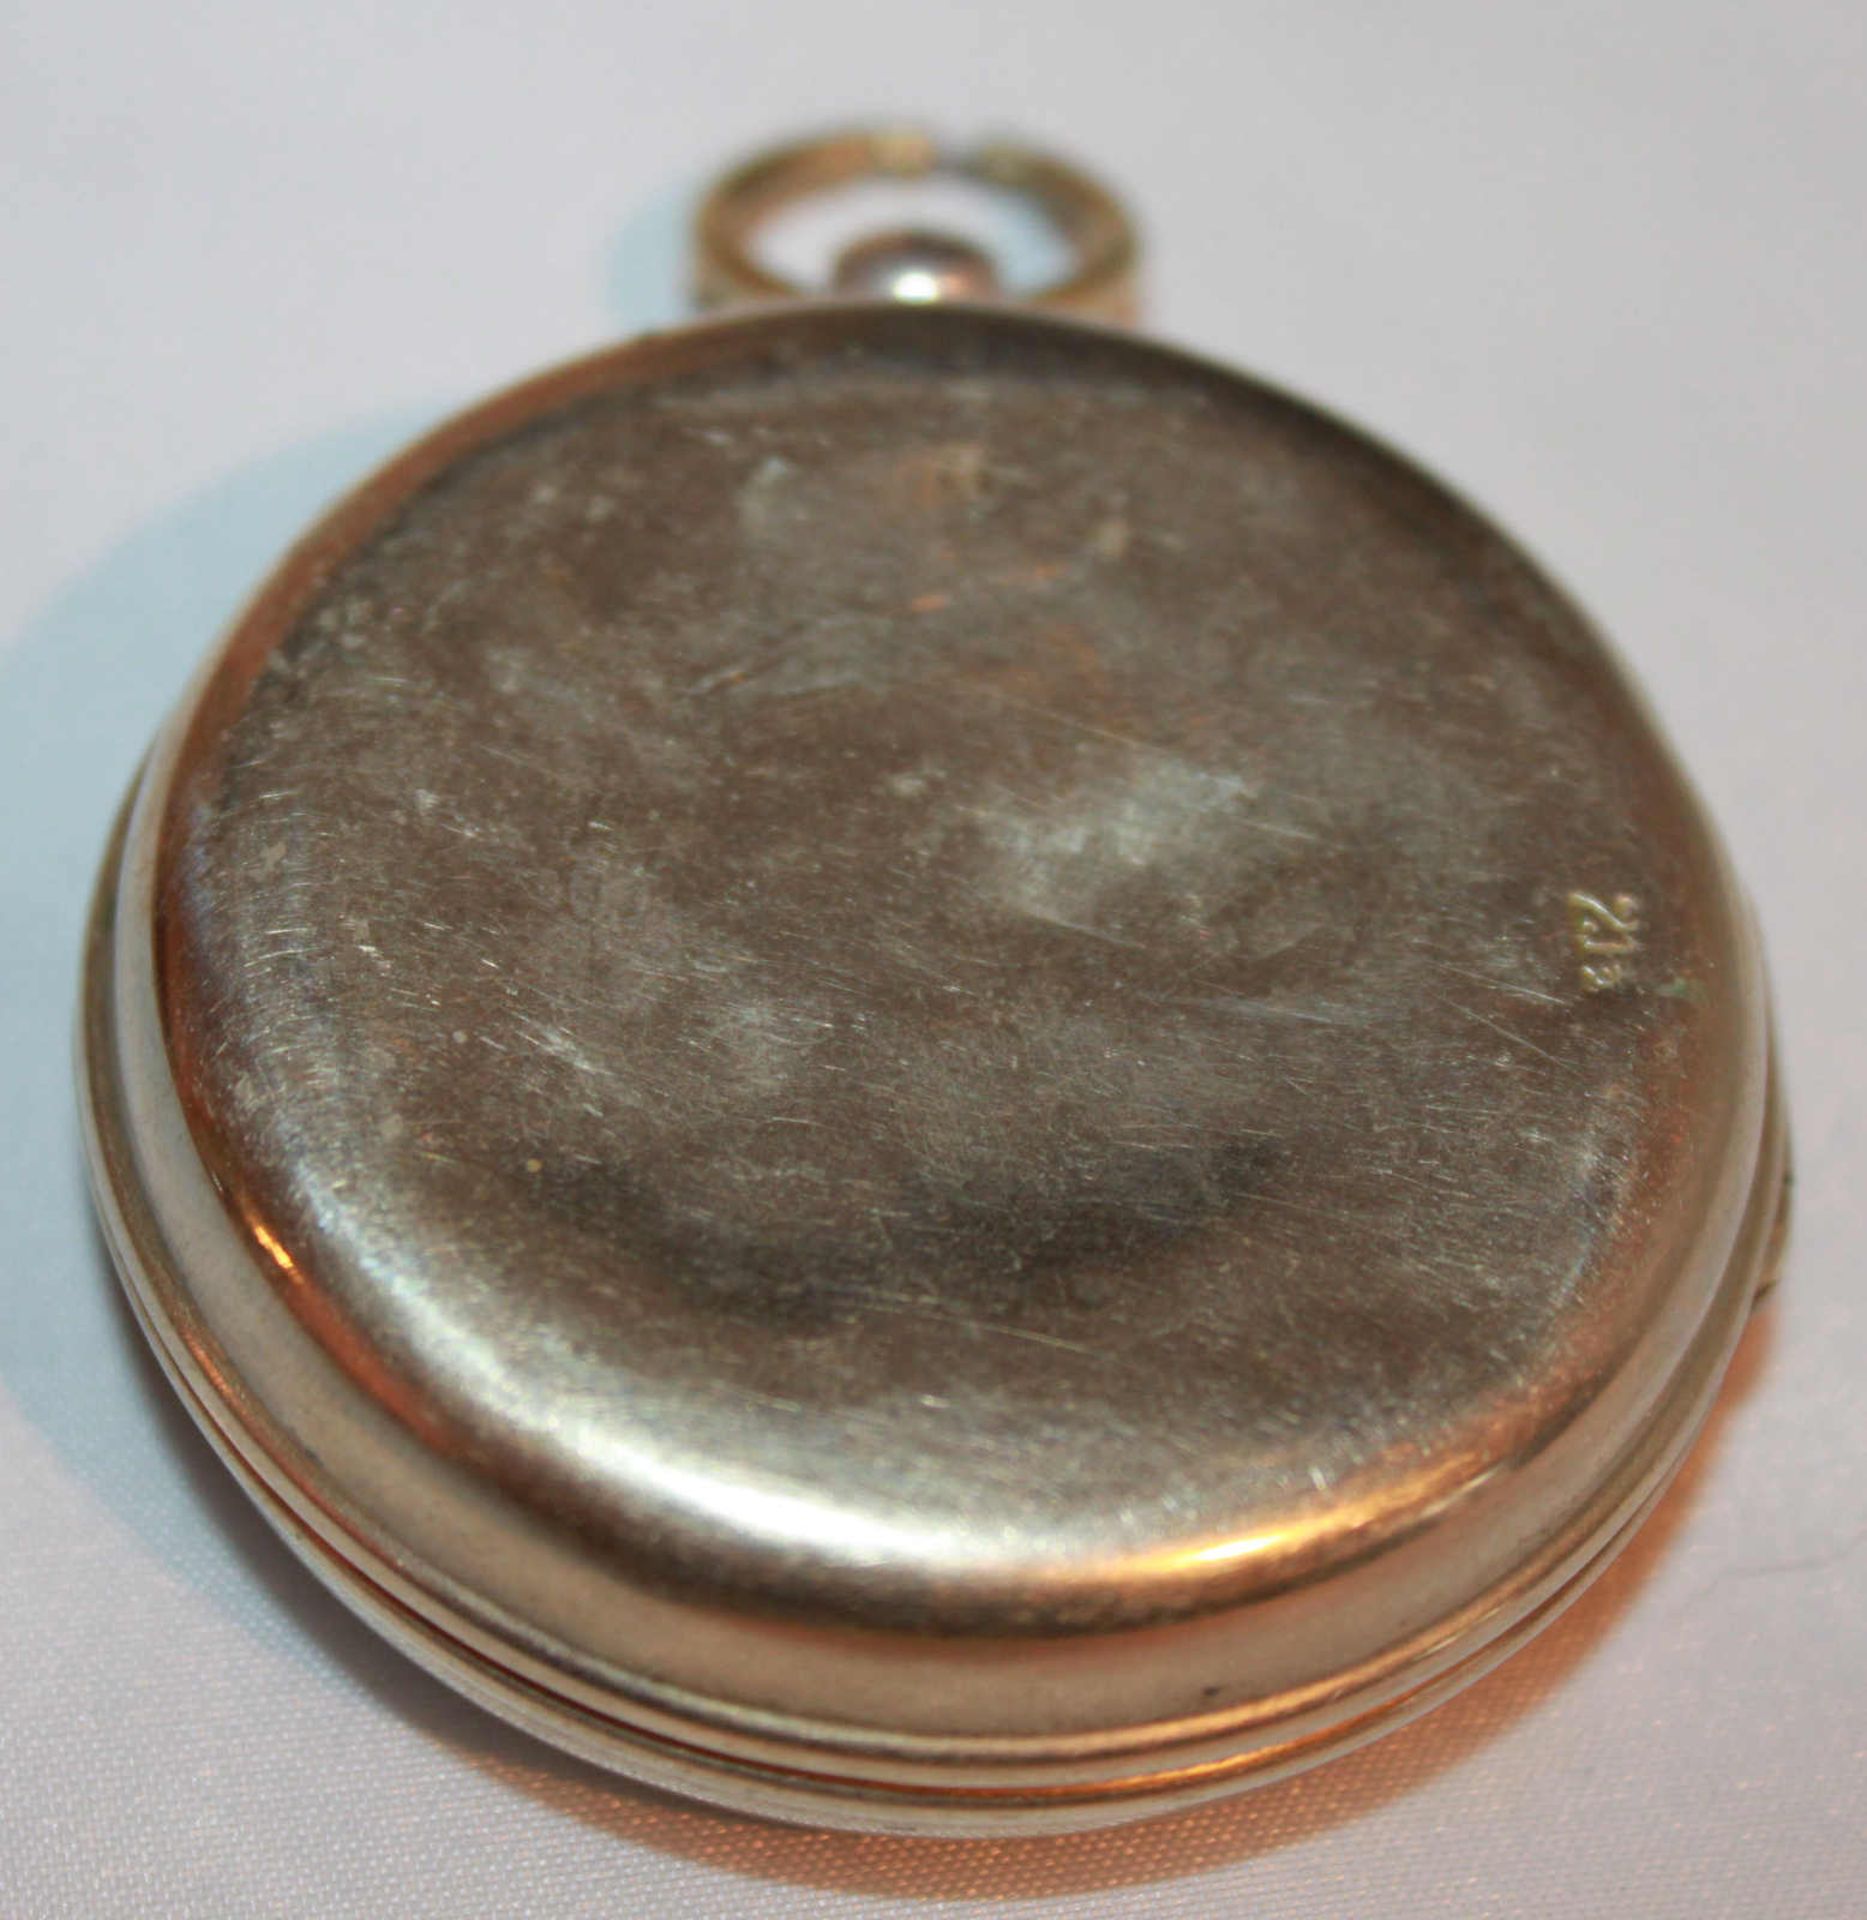 alte Taschenuhr mit Schlüsselaufzug, in einem Taschenuhrenschutzgehäuse, Funktion nicht geprüft, - Bild 2 aus 2